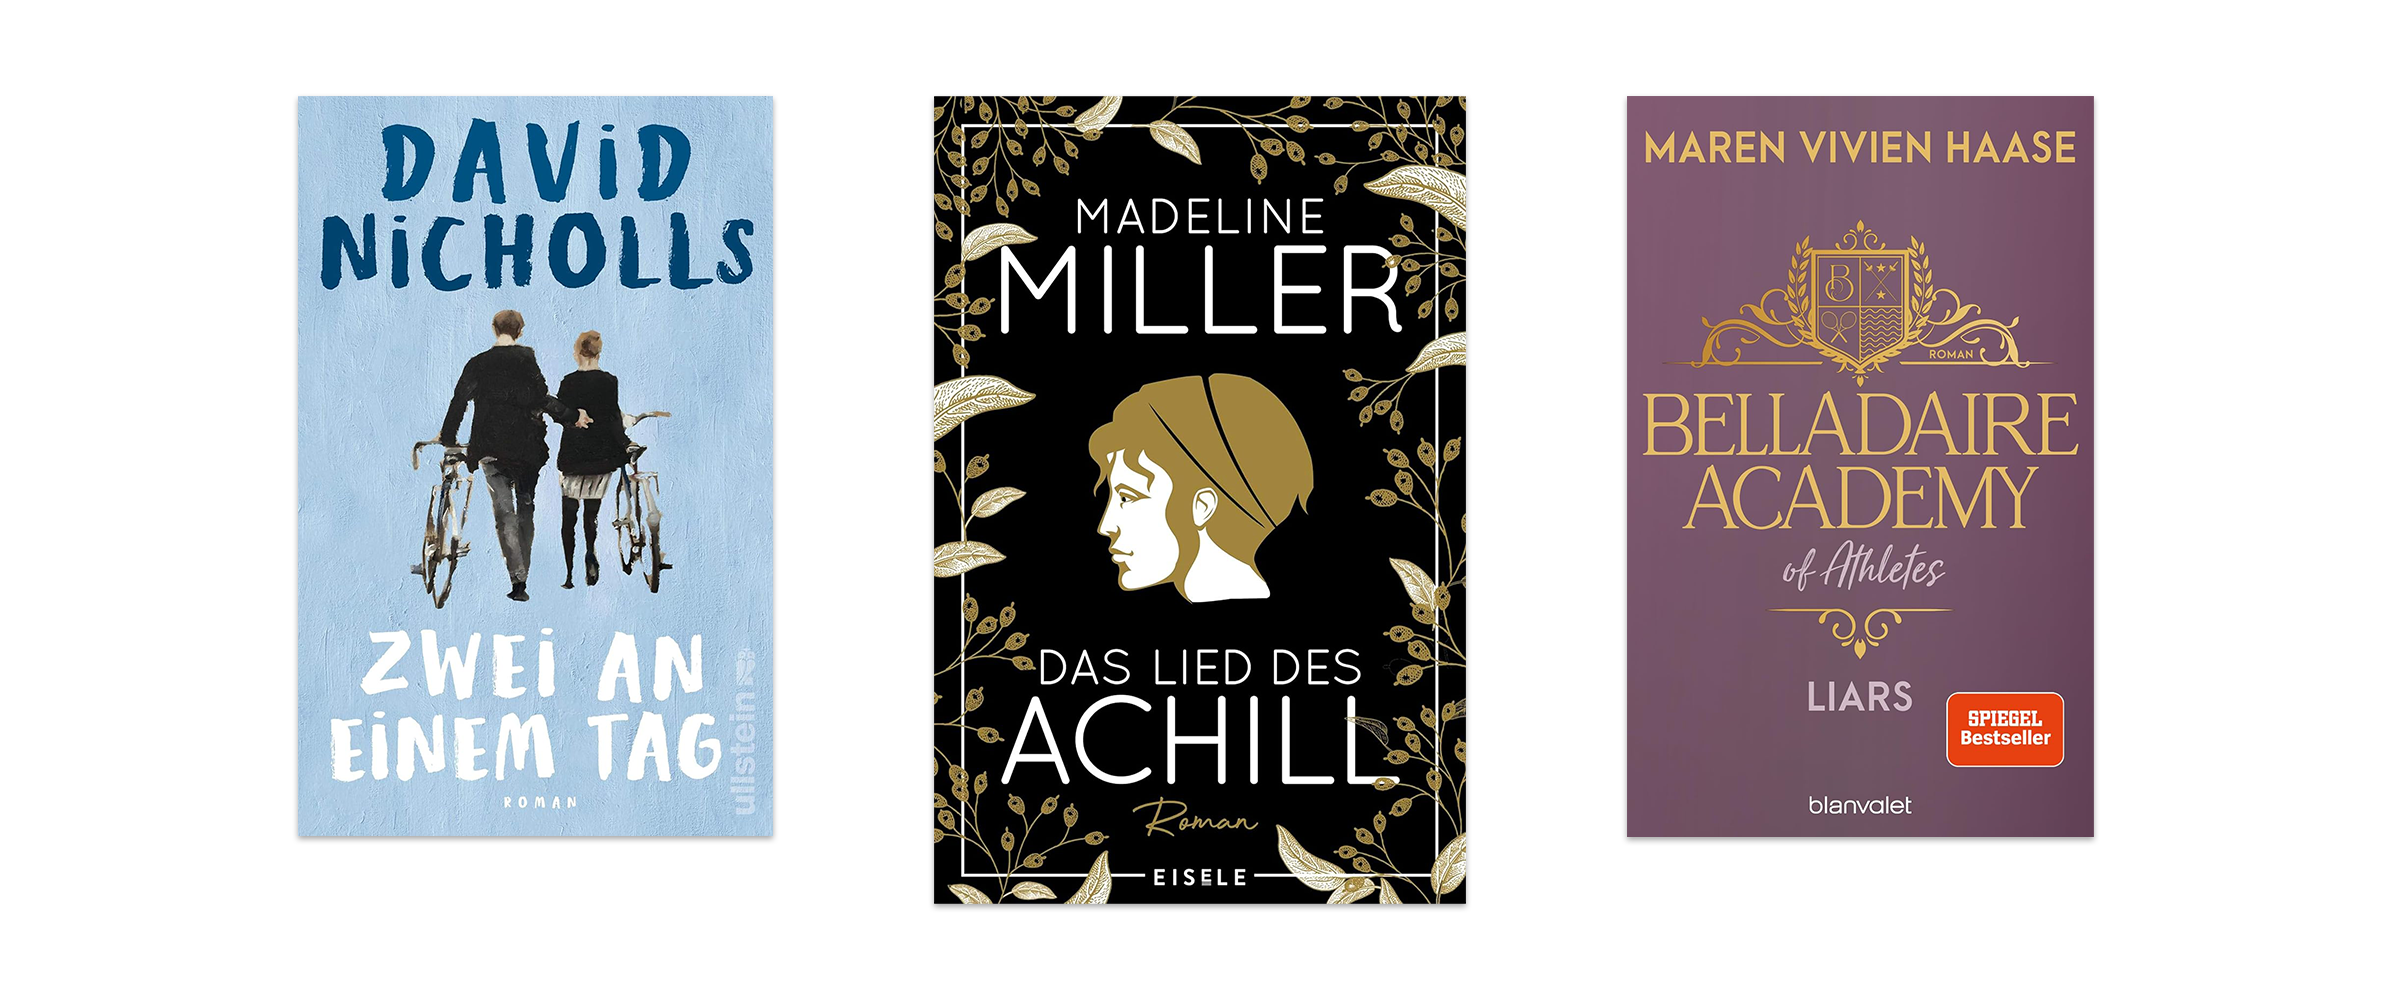 Drei tolle Romance-Romane vor weißem Hintergrund. Zu sehen sind Das Lied des Achill, Belladaire Academy und Zwei an einem Tag.